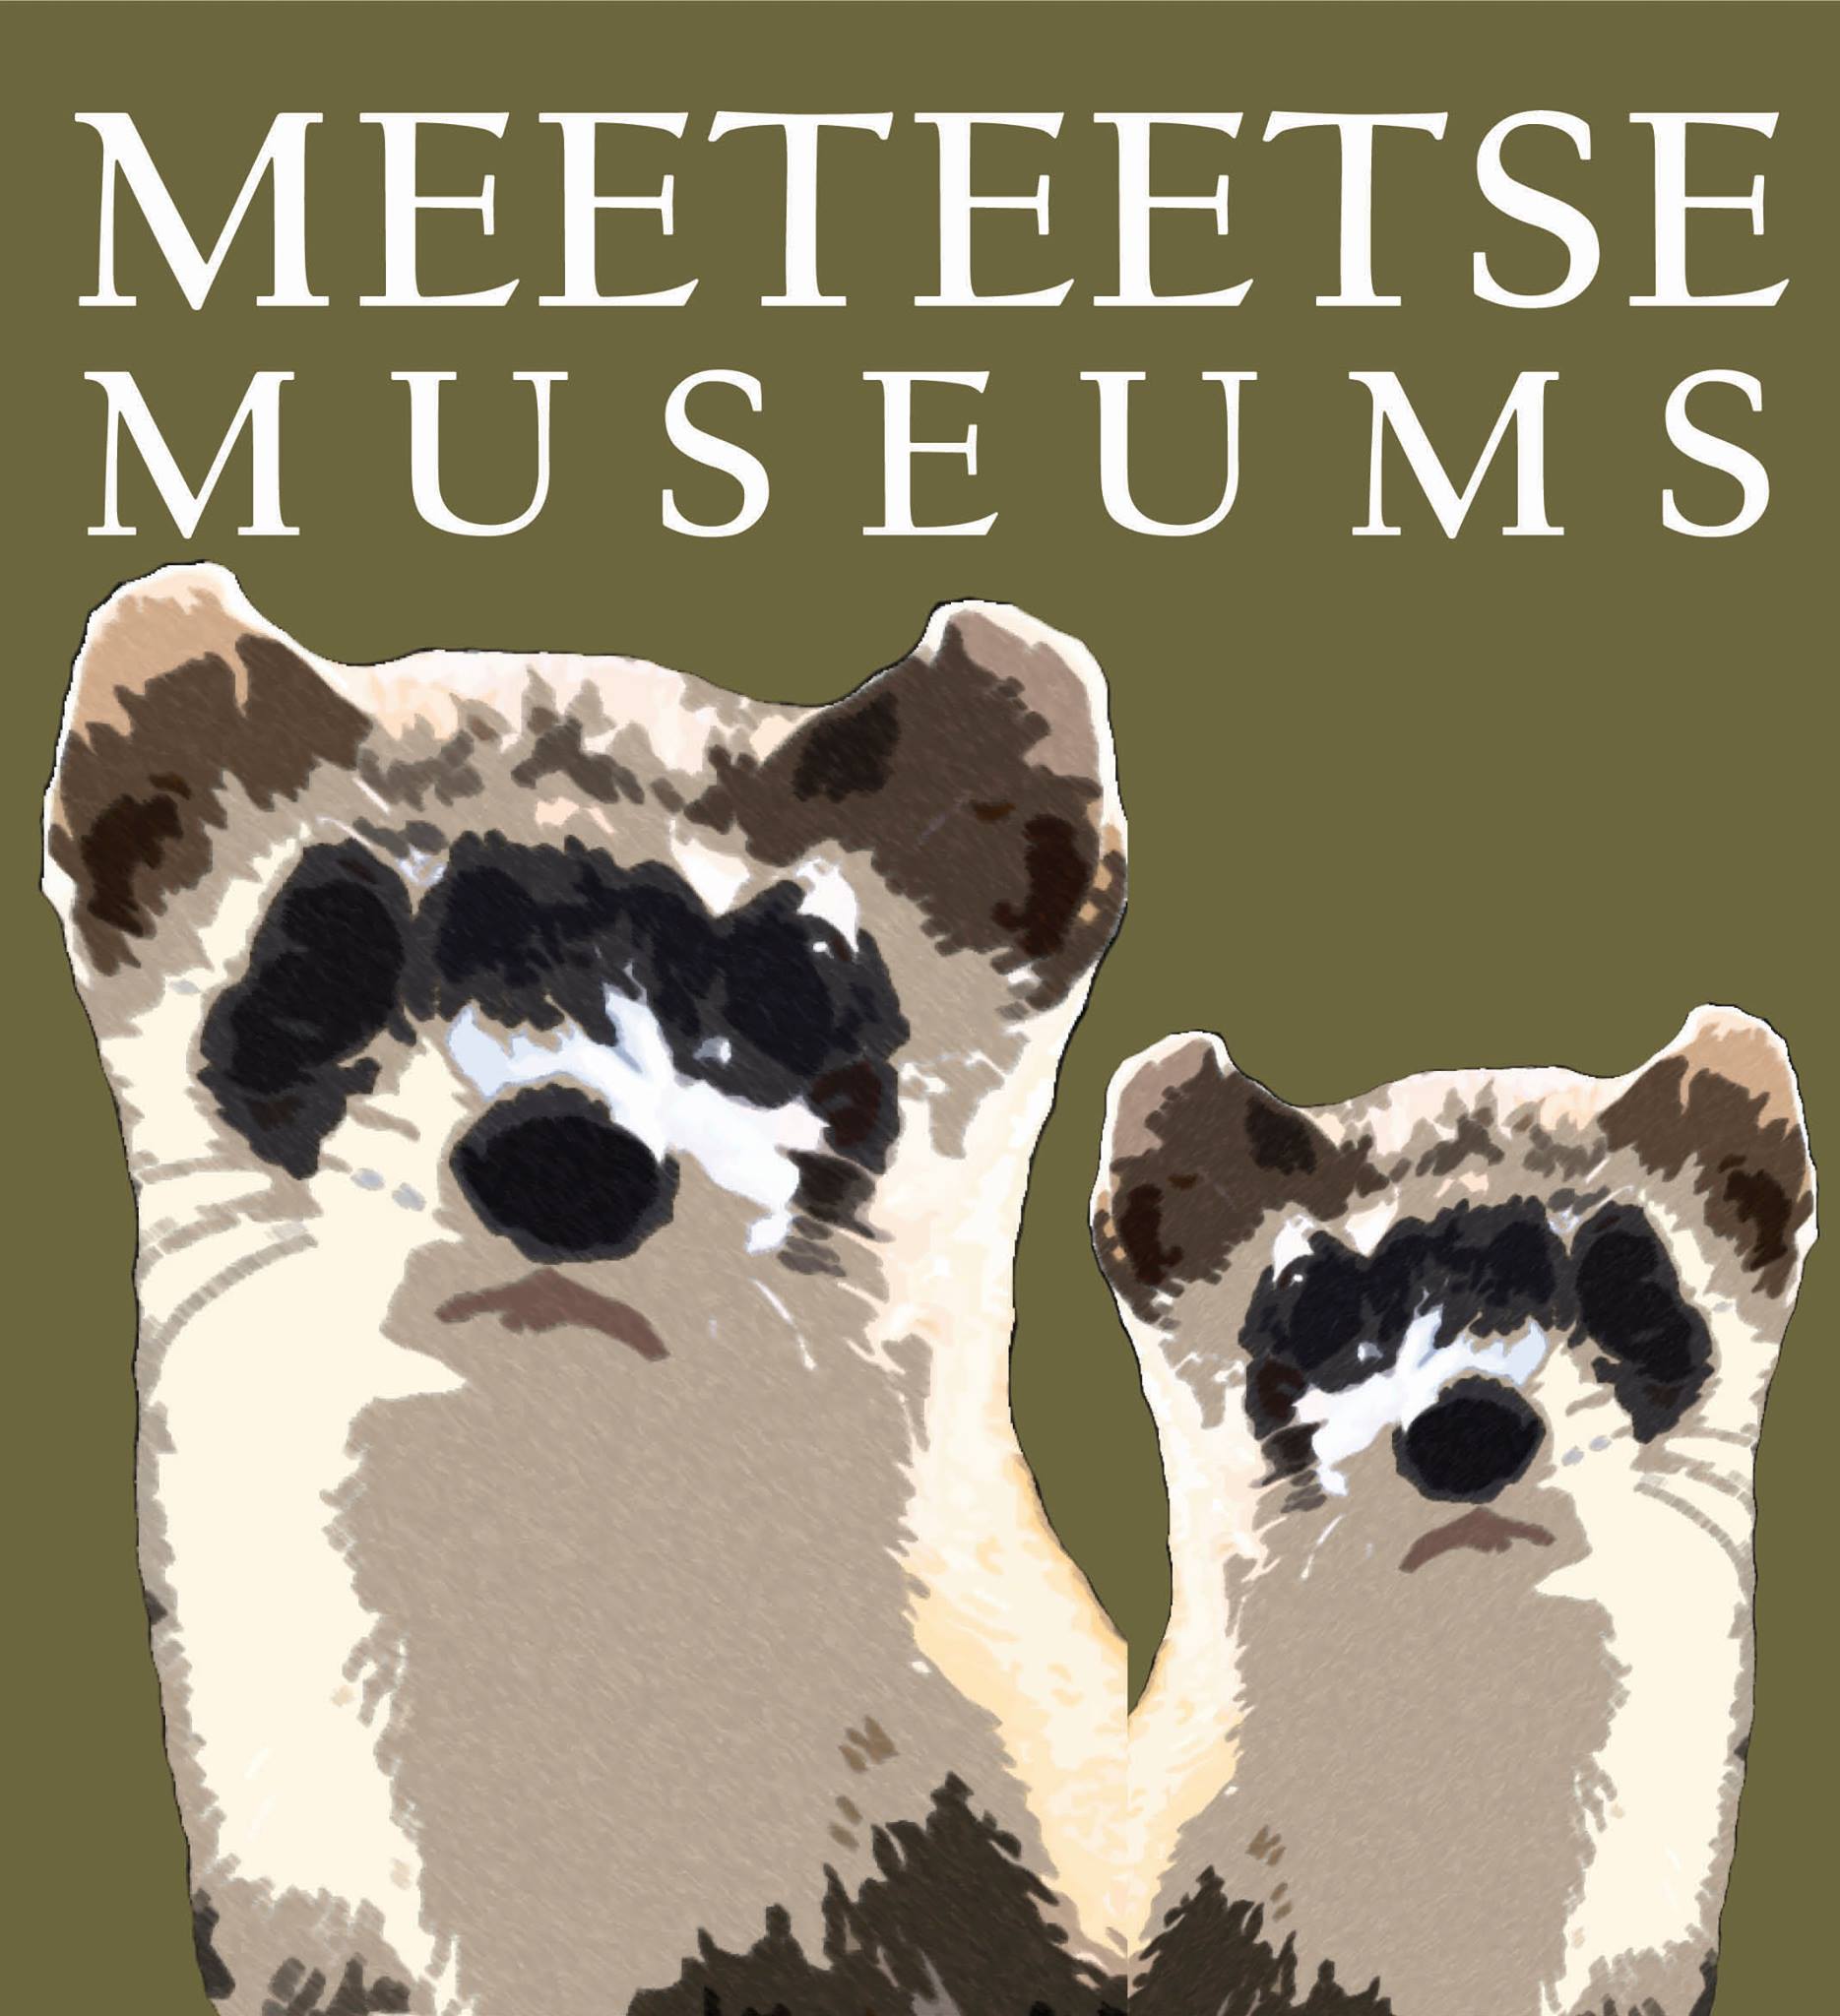 Meeteetse Museum